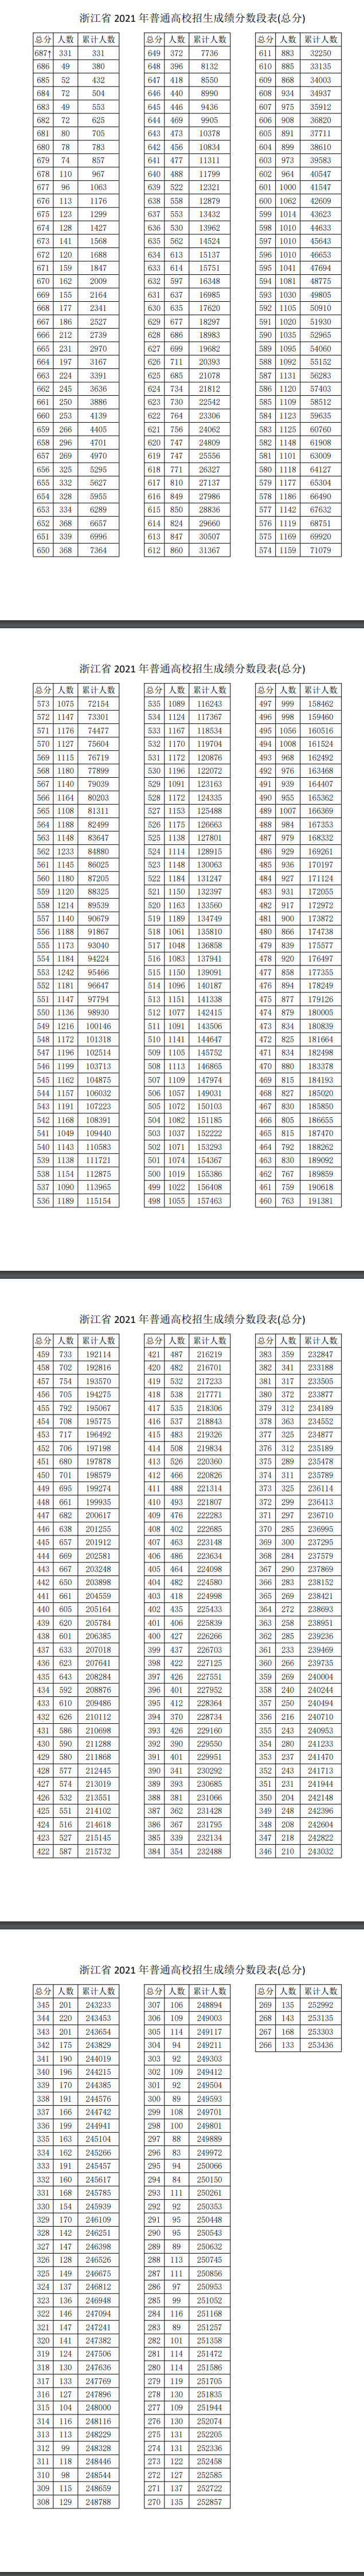 浙江高考一分一段公布表2022